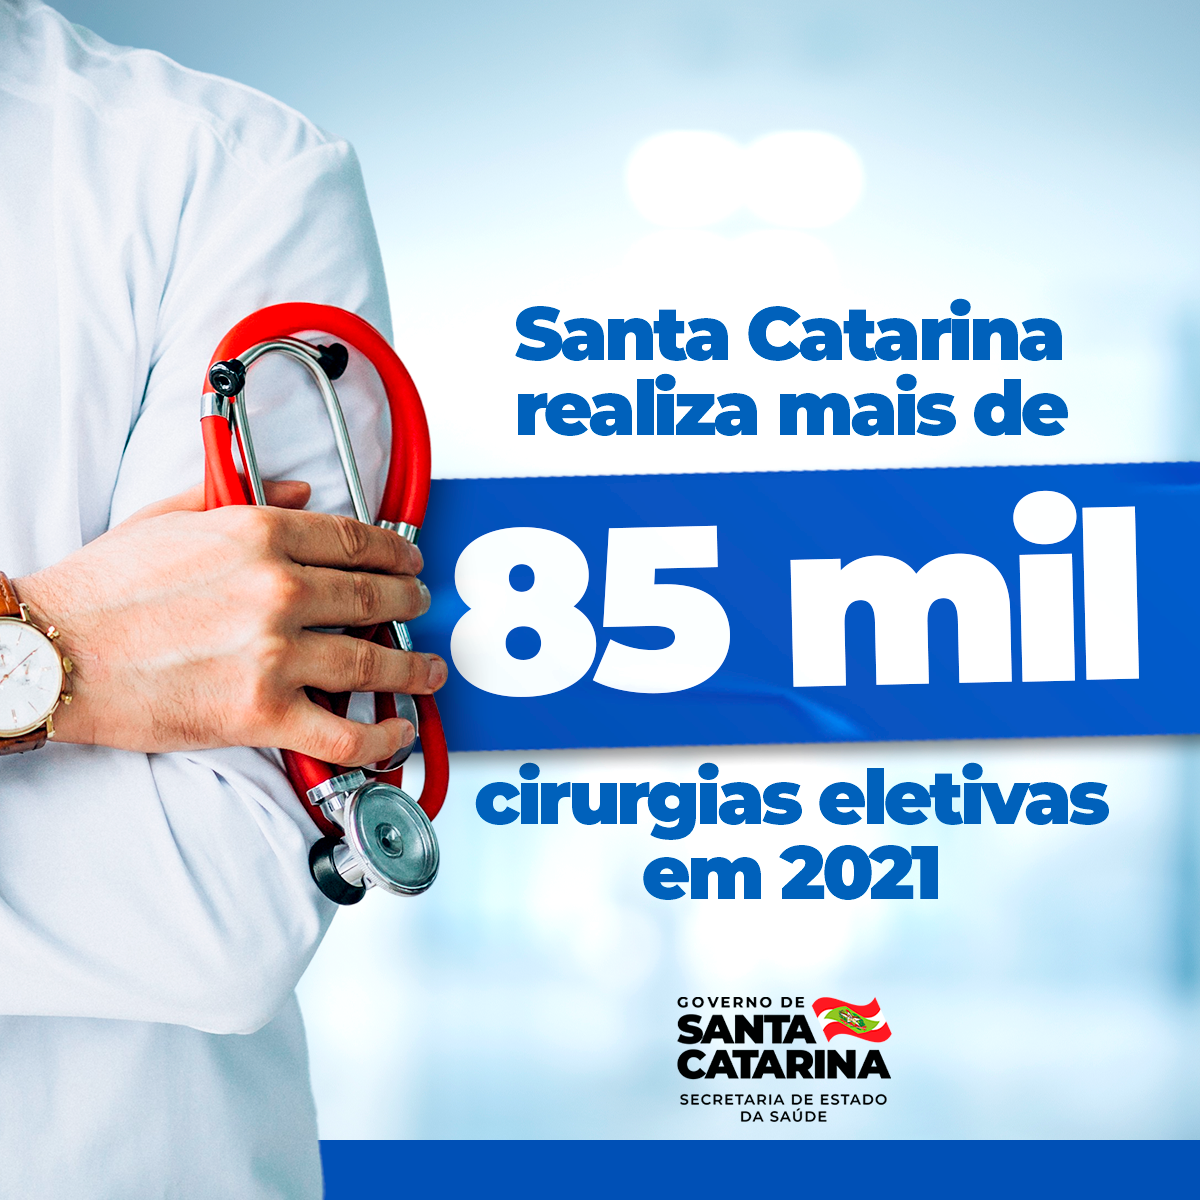 Santa-Catarina-realiza-mais-de-85-mil-cirurgias-eletivas-em-2021.png